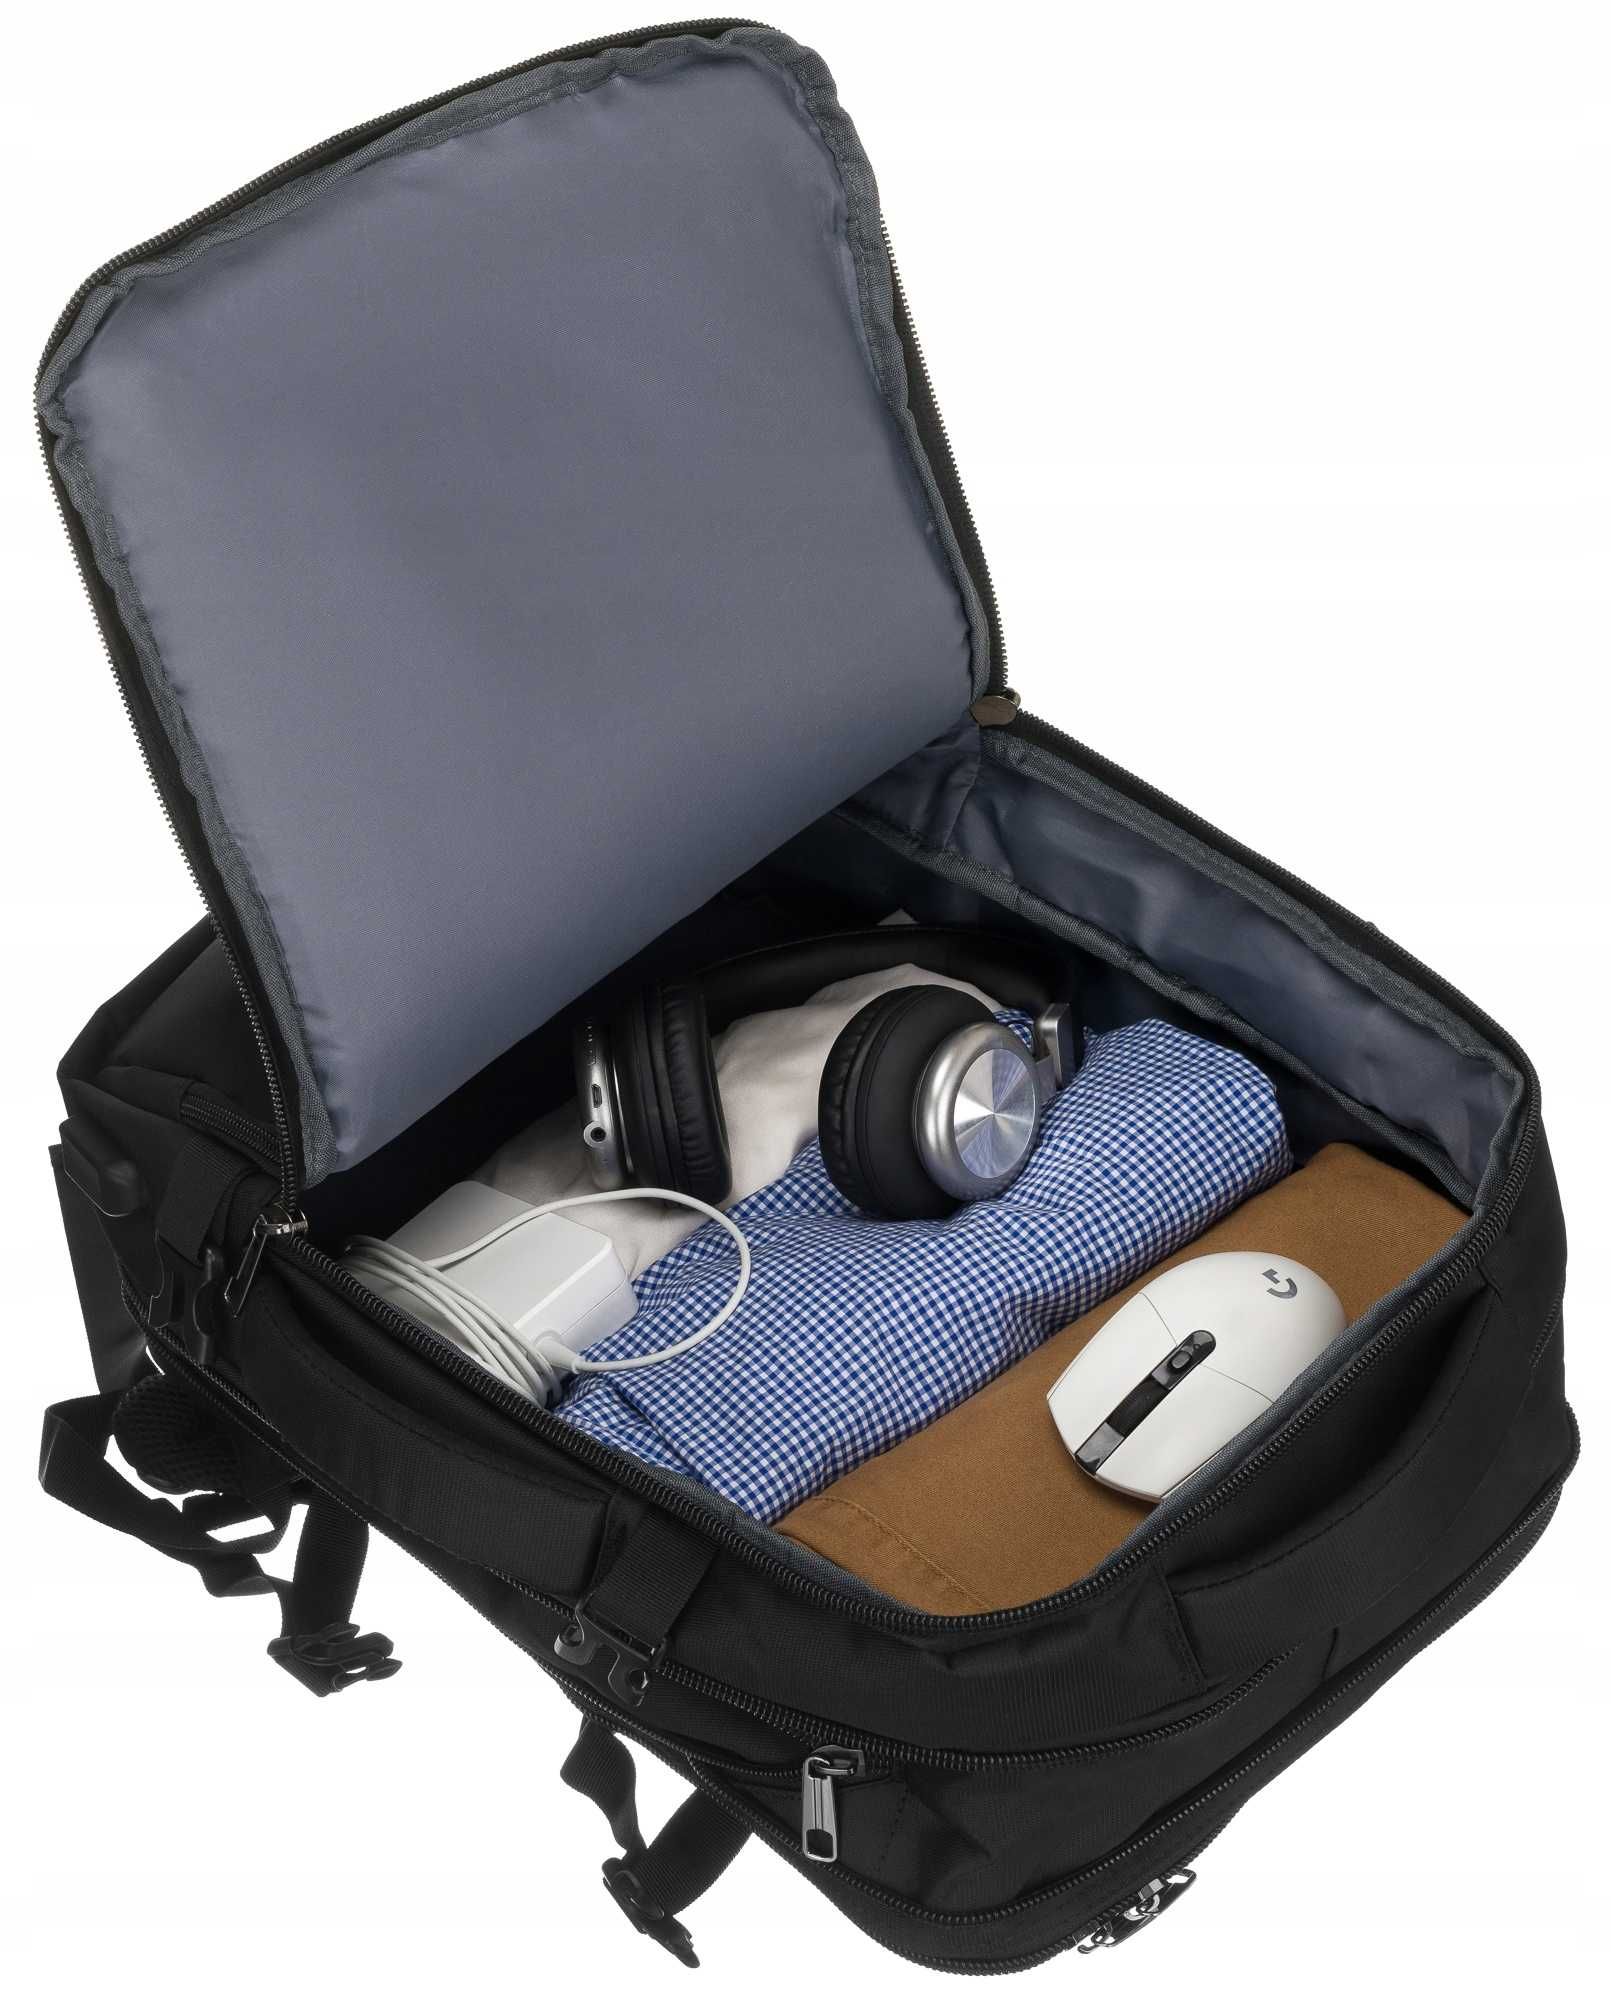 PETERSON solidny plecak podróżny bagaż podręczny czarny WIZZAIR